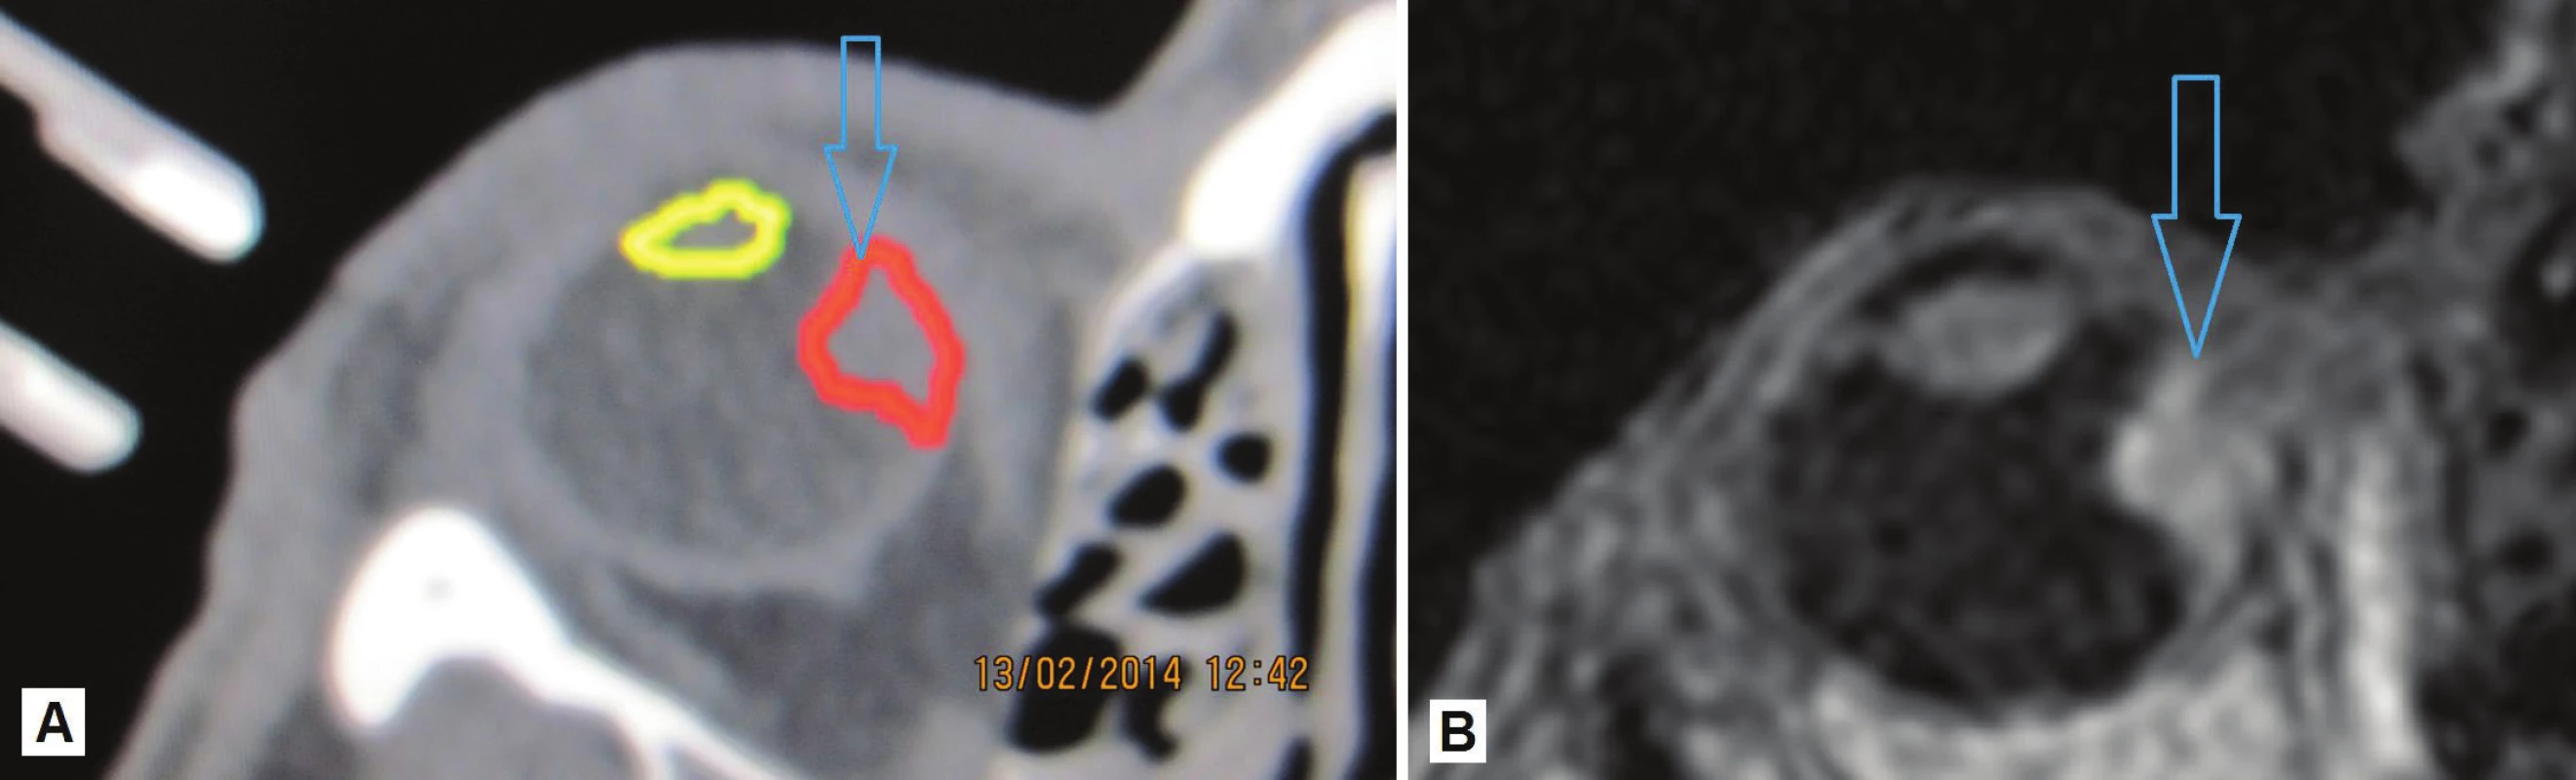 Zakreslenie nádorového ložiska vychádzajúceho z oblasti corpus ciliare s prerastaním smerom „dozadu“ do oblasti choroidy – ložisko červená farba, šošovka žltá farba (A), MR zobrazenie oka s ložiskom (B)